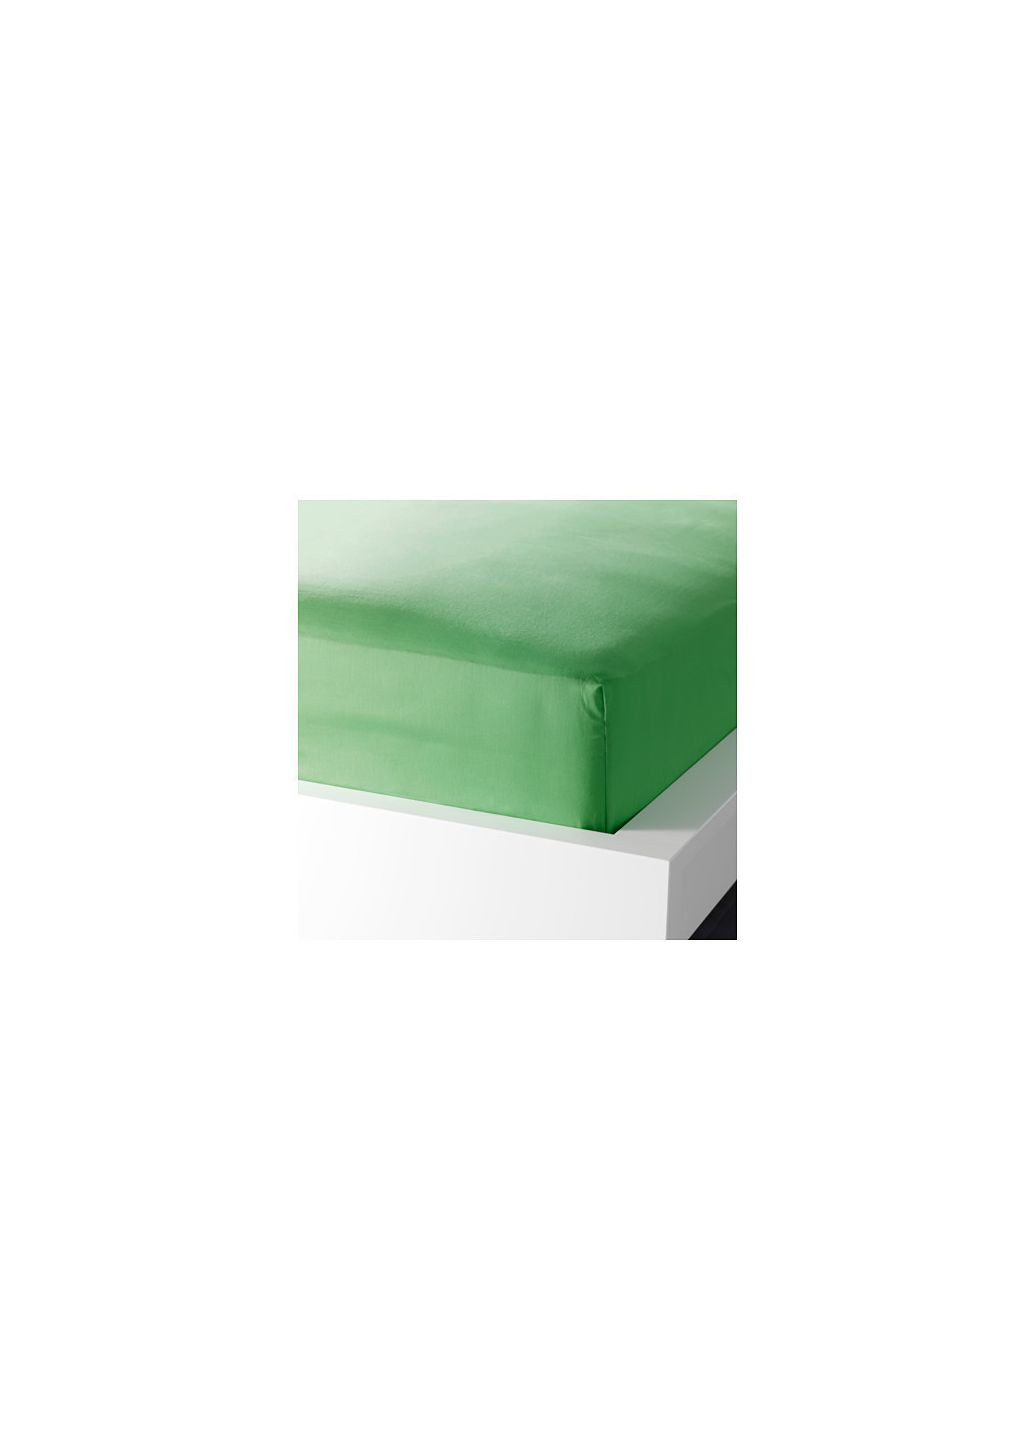 Простыня натяжная зеленая 160х200, IKEA (277965005)